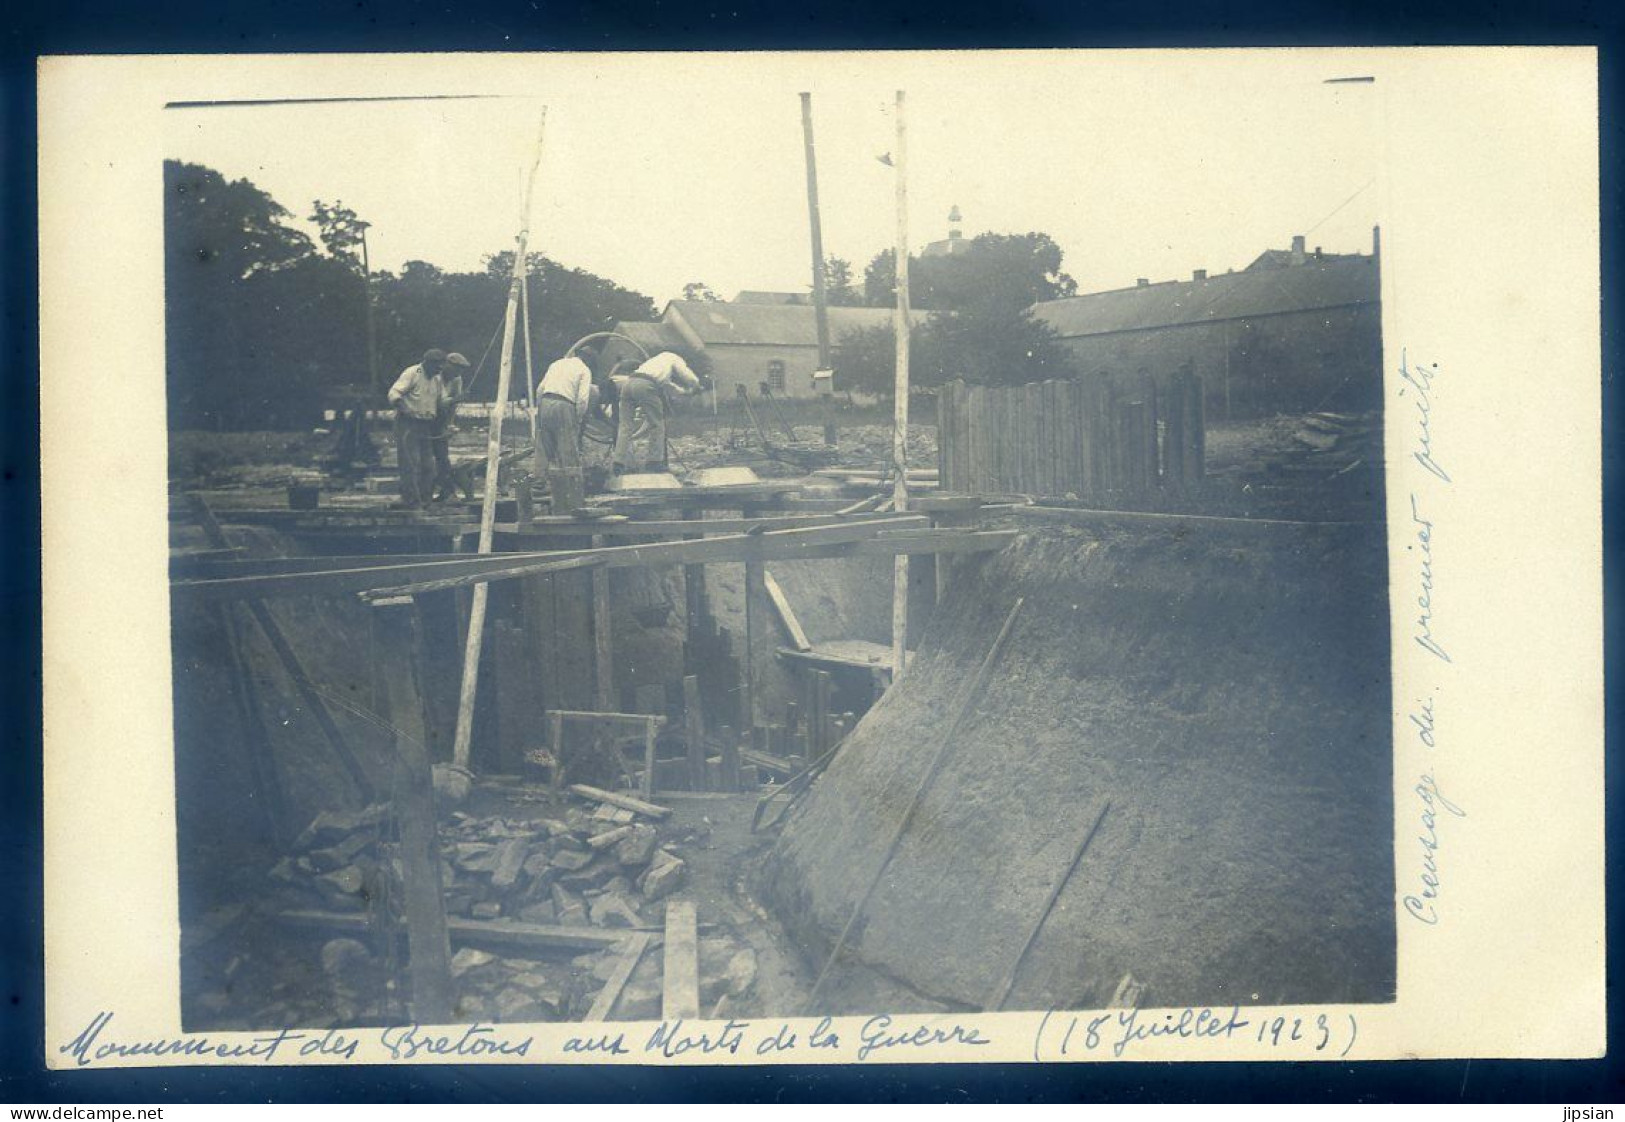 exceptionnel Sainte Anne d' Auray lot de 25 cartes photo construction Mémorial de la grande guerre de 1922 à 1927 STEP53